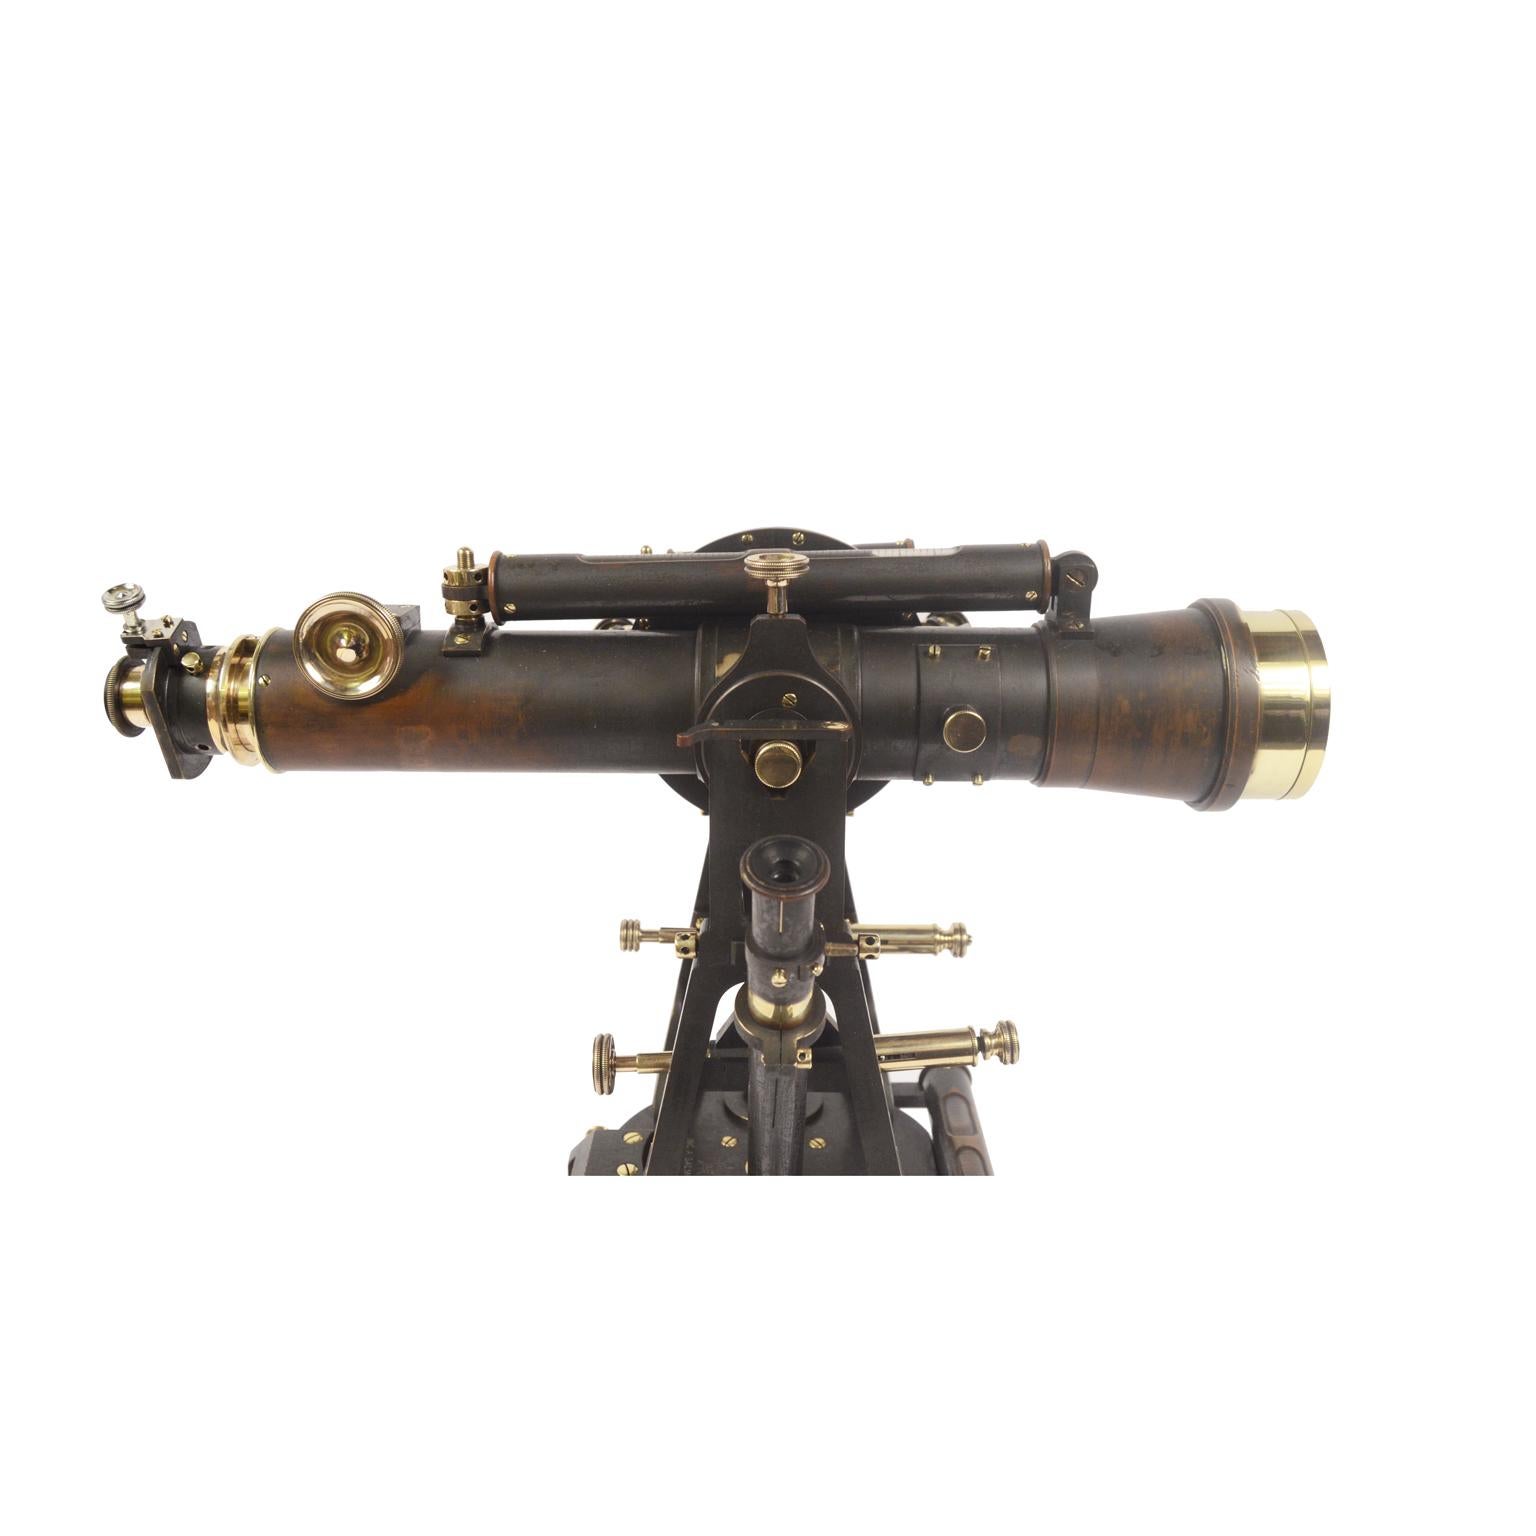 1870 Salmoiraghi Tacheometer Surveyor Measuring Instrument in Original Patina 5